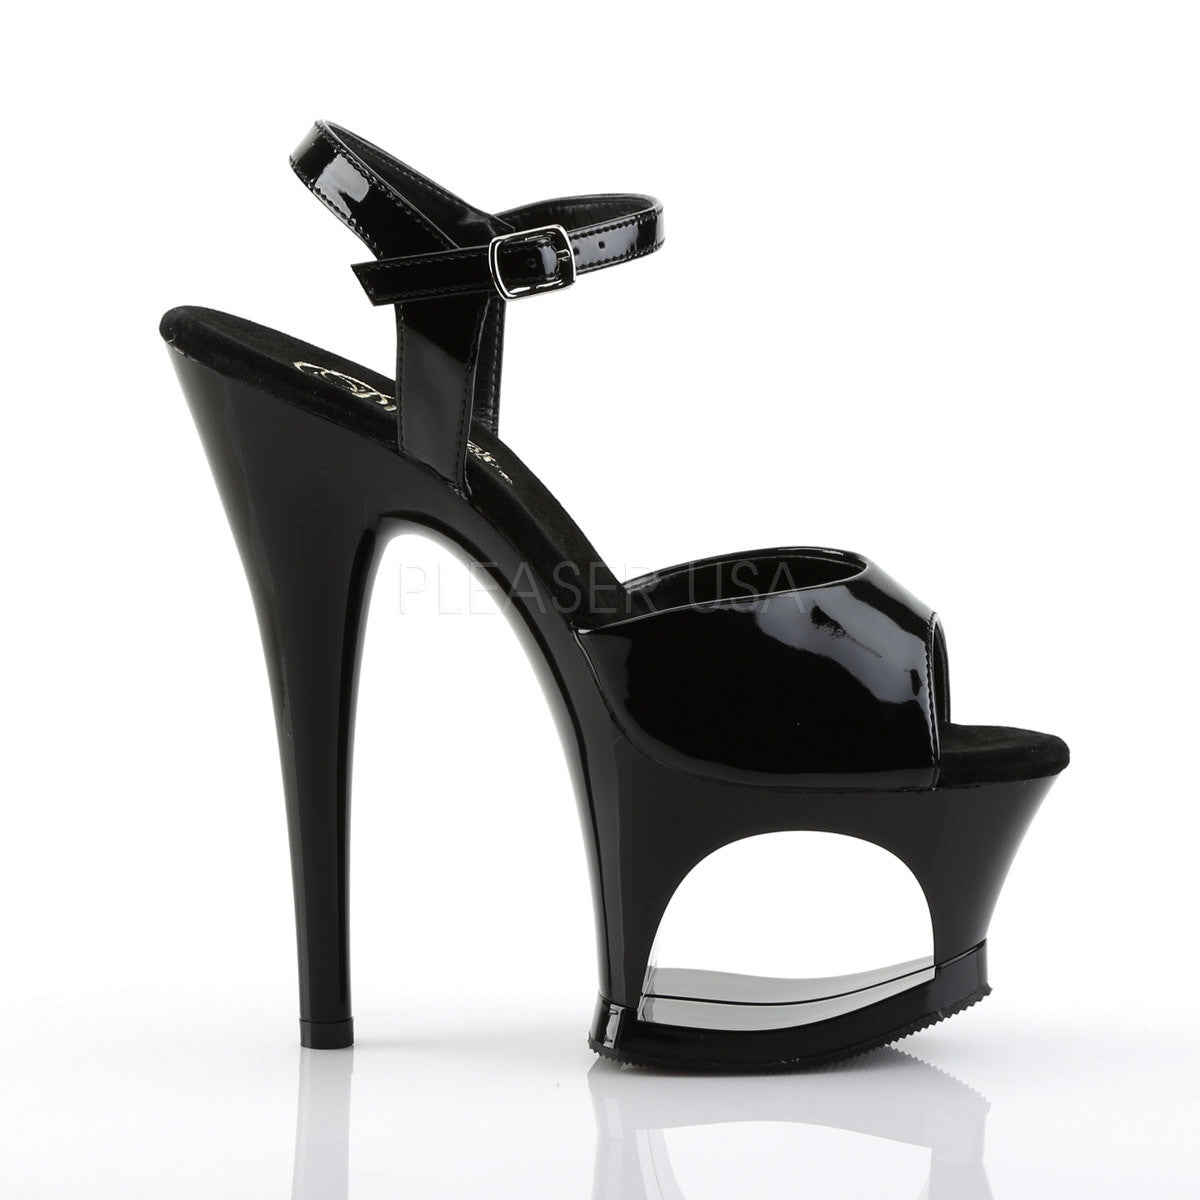 PLEASER MOON-709 Black Ankle Strap Sandals – Shoecup.com